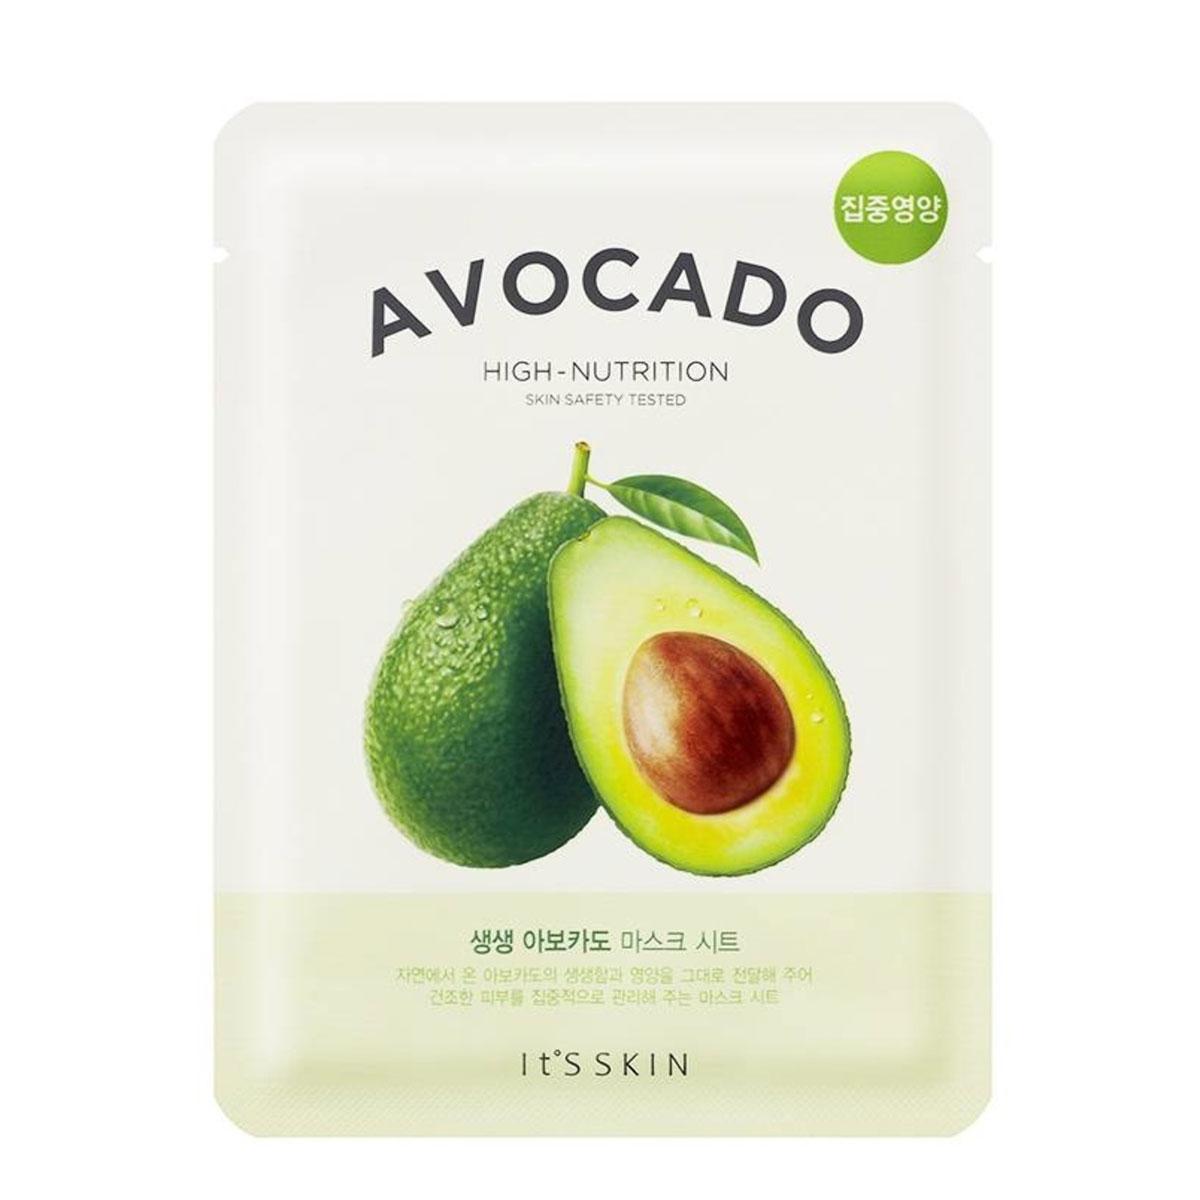 ماسک ورقه ای آووکادو - avocado high nutrition mask